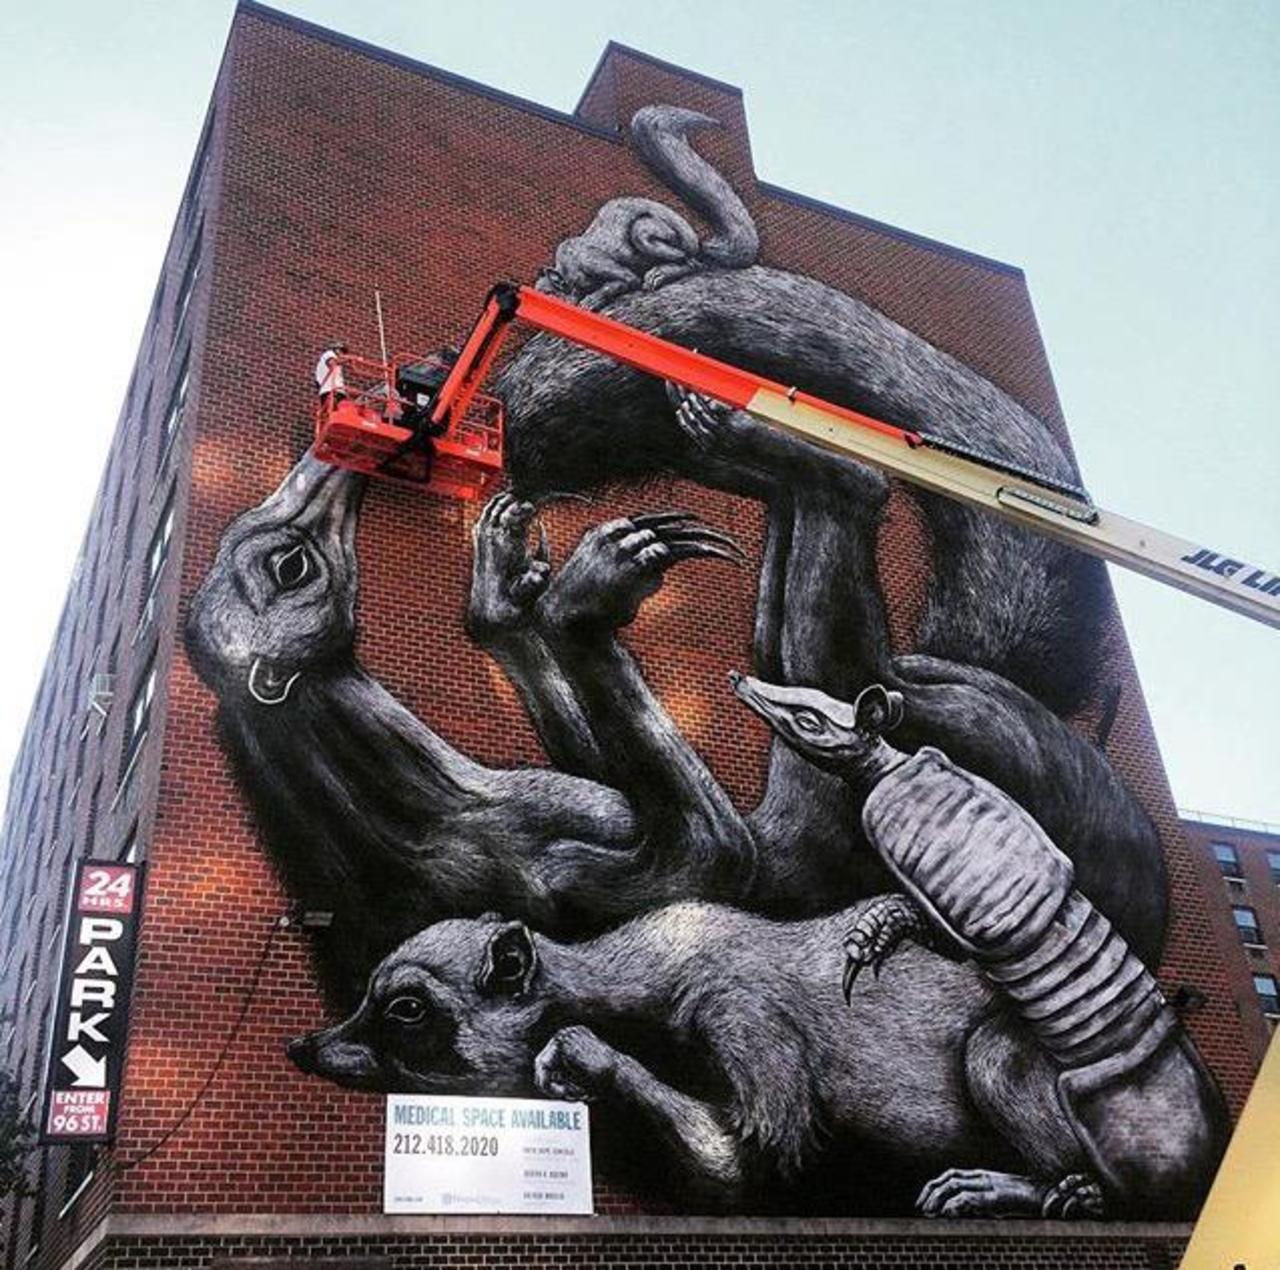 Street Art in progress by ROA in NYC

#art #graffiti #mural #streetart http://t.co/vuWs8zLEjn